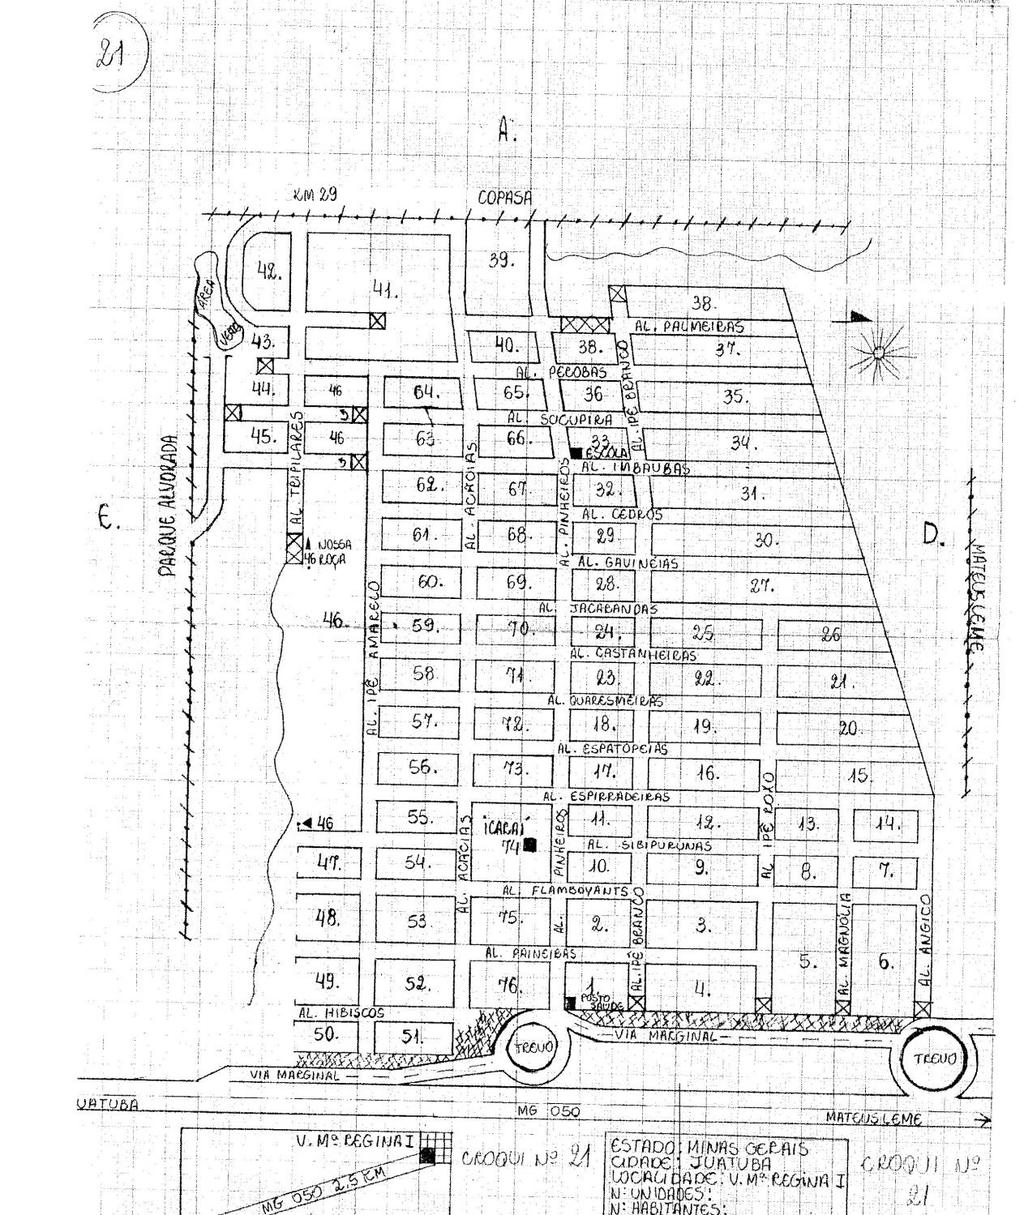 Anexo 7: Mapa do bairro Vila Maria Regina I, integrante da Área Controle do estudo,